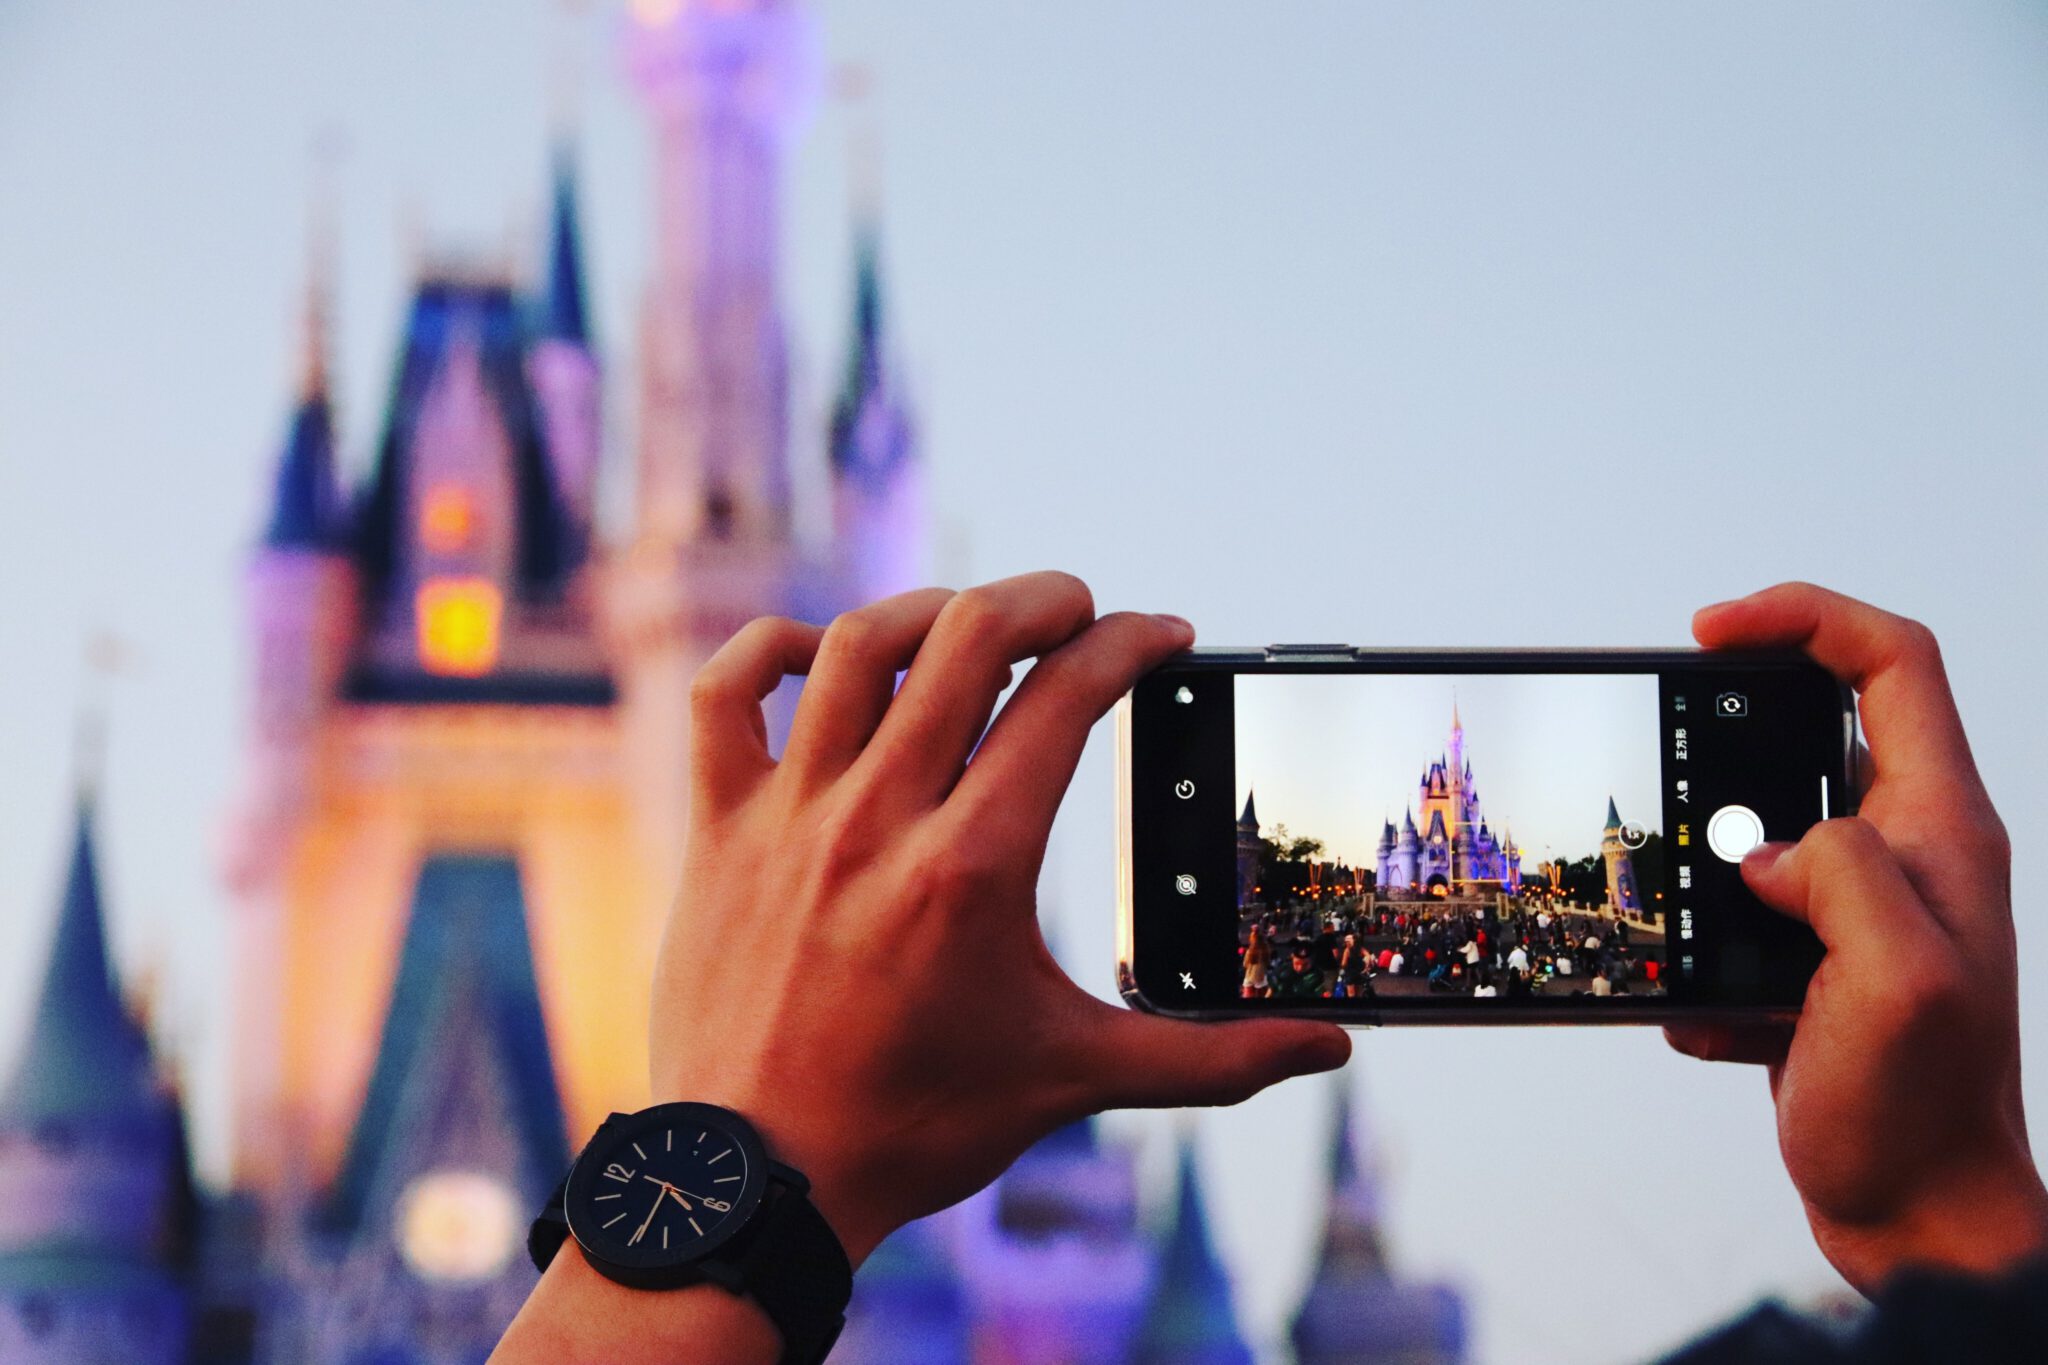 Persoon die foto maakt van kasteel in Disneyland met telefoon